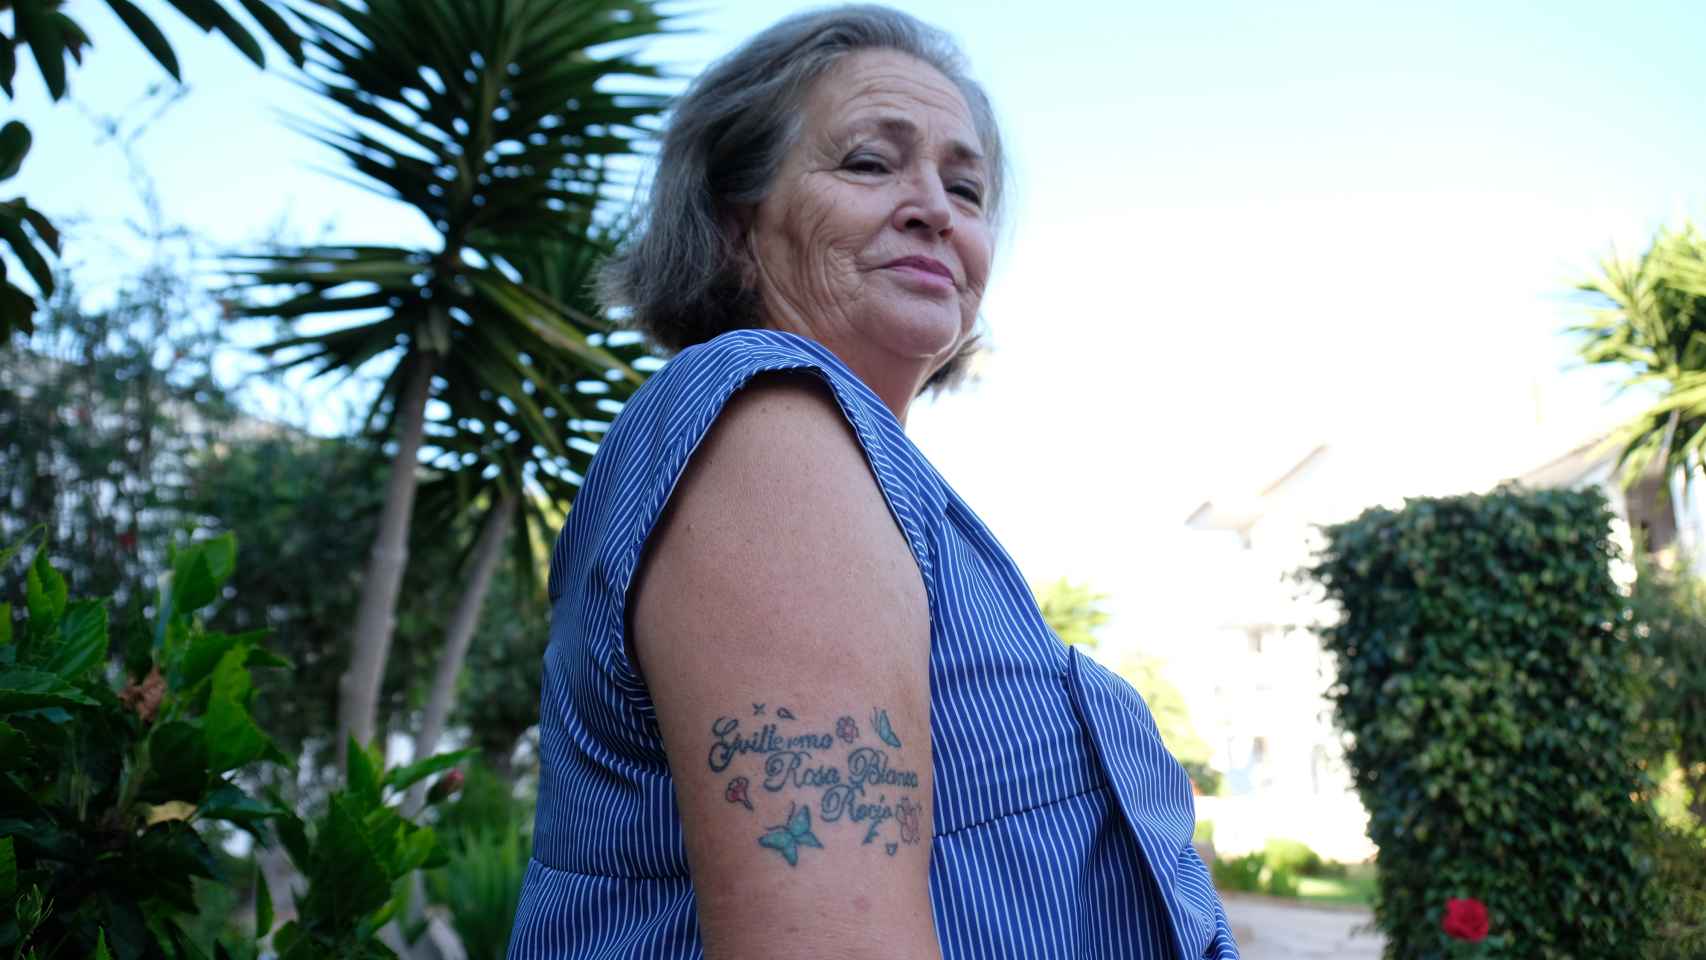 Alicia Hornos atiende a EL ESPAÑOL en su casa de Mijas (Málaga). En el brazo lleva tatuados los nombres de sus hijos.